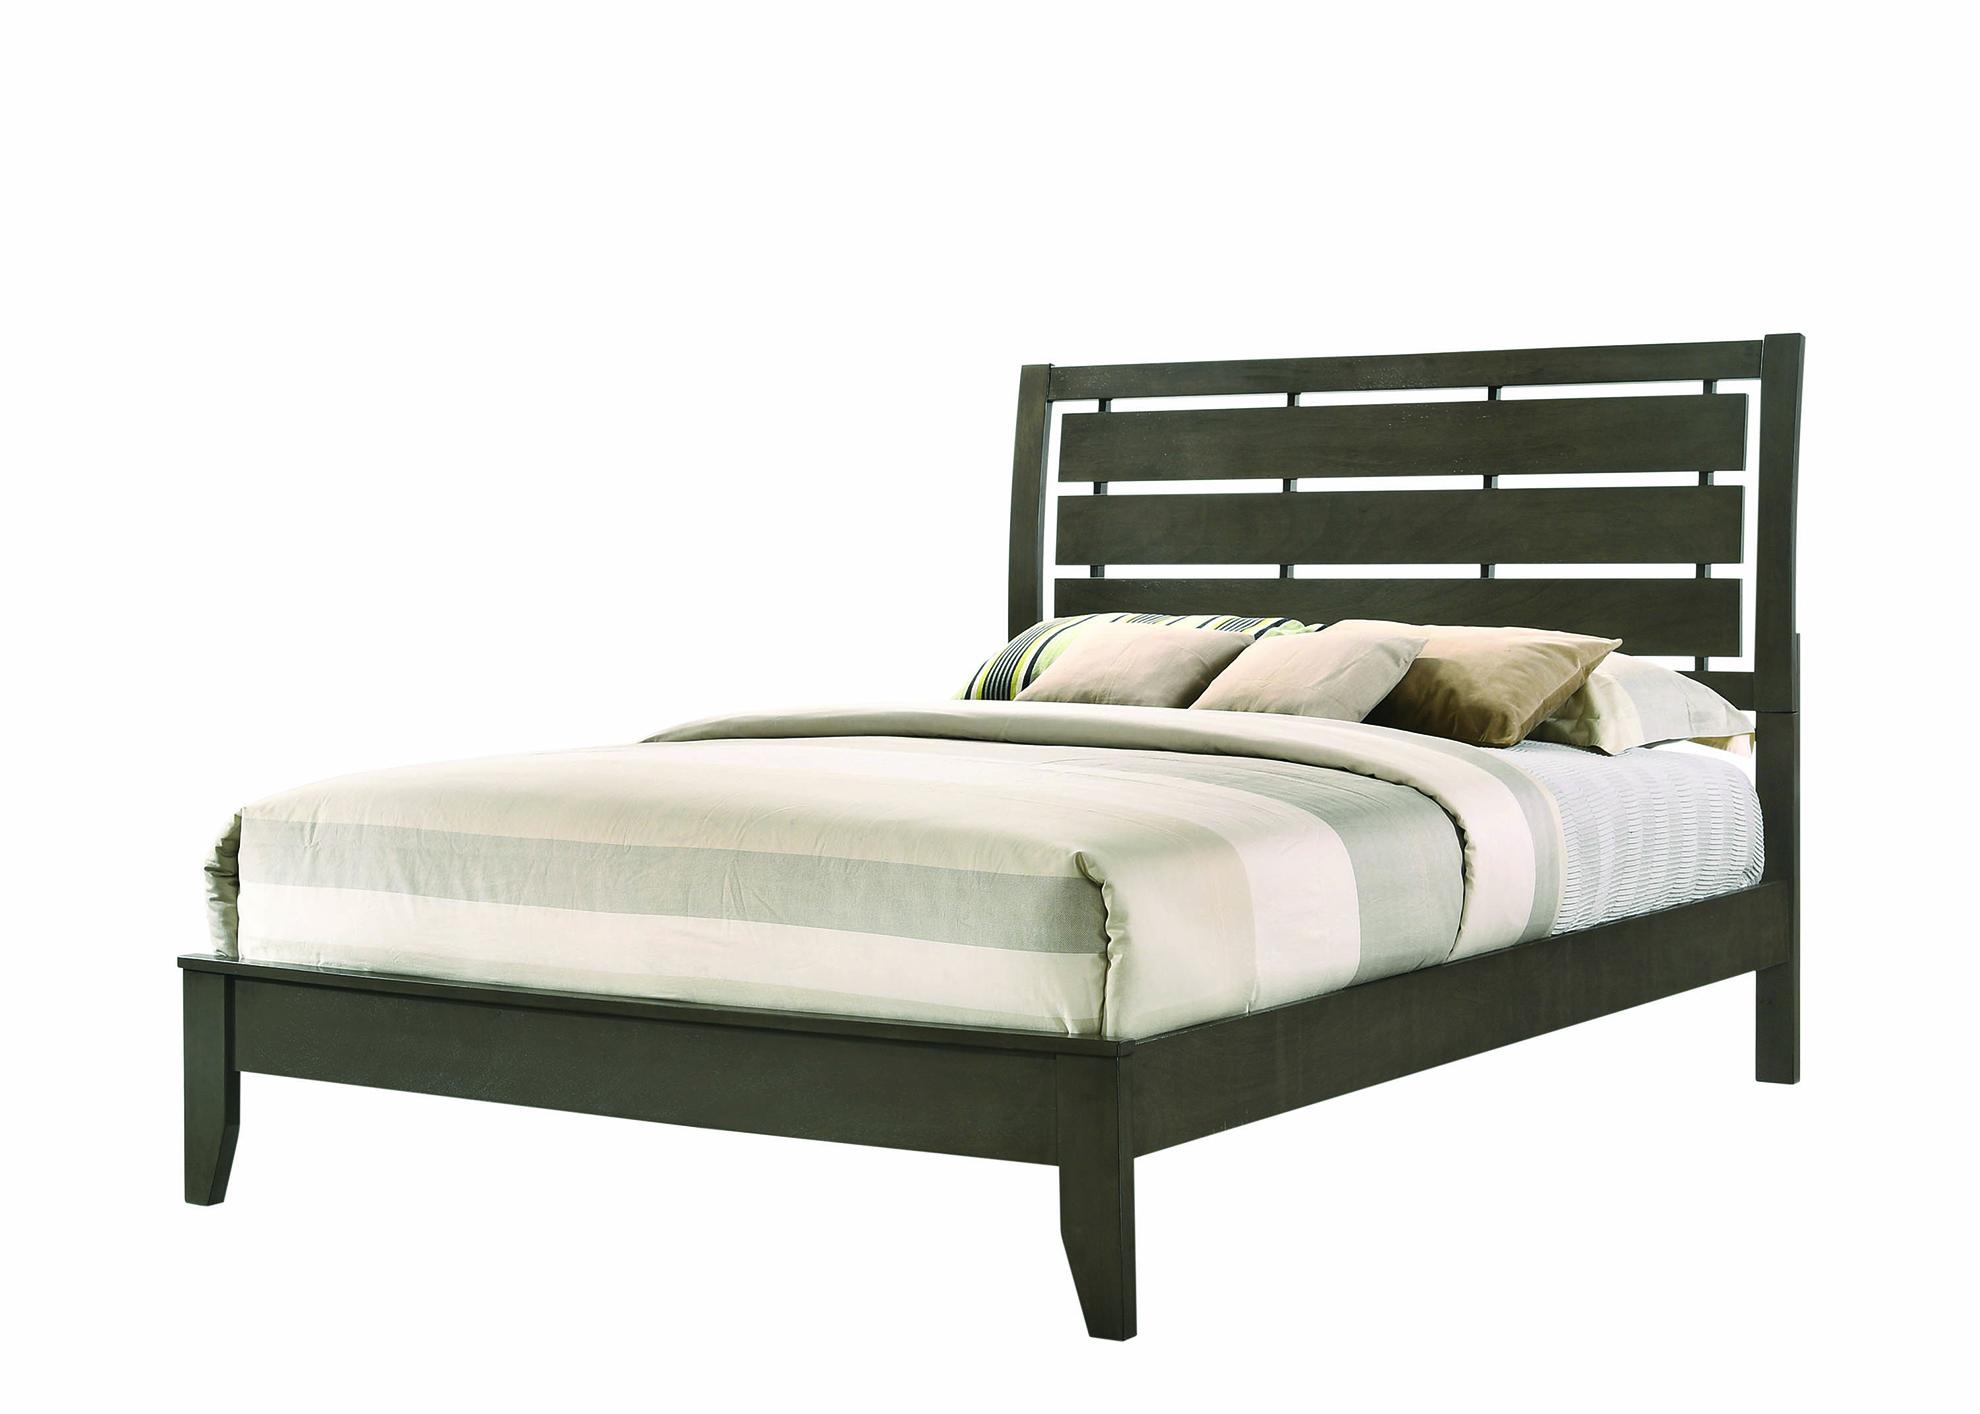 

    
Transitional Mod Gray Wood Queen Bedroom Set 3pcs Coaster 215841Q Serenity
